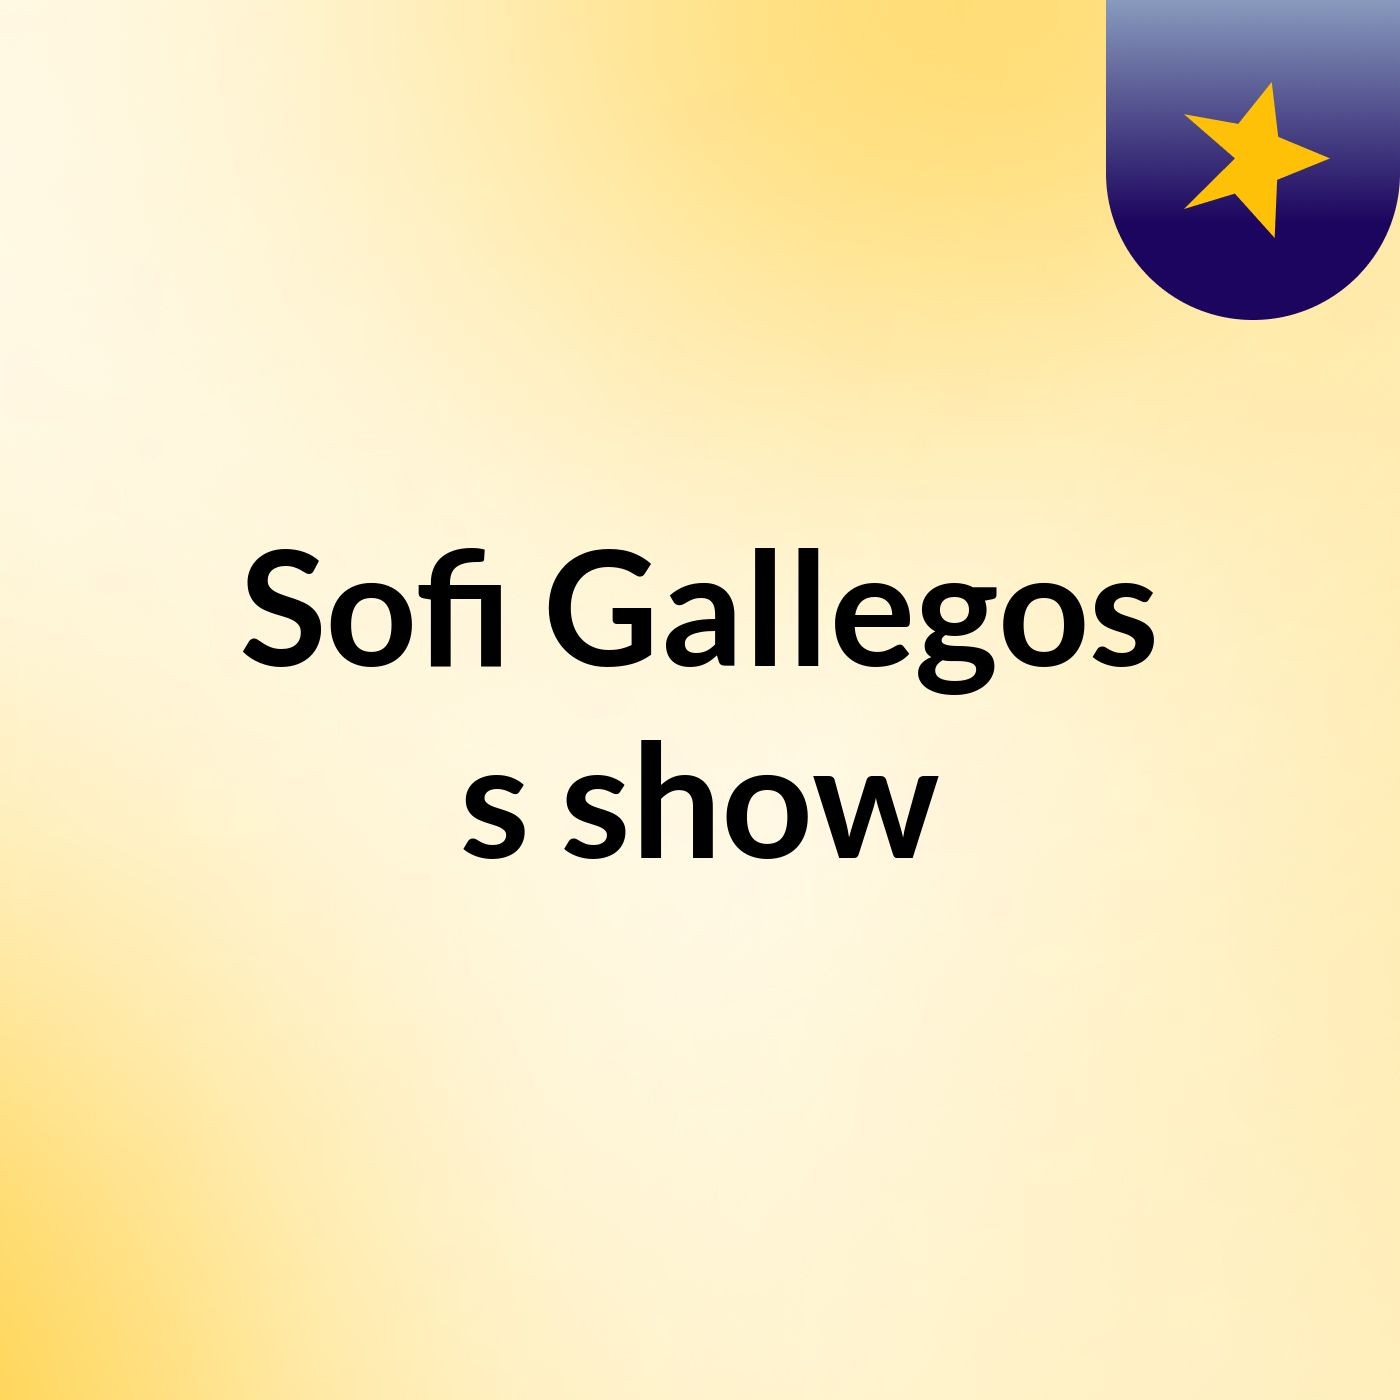 Sofi Gallegos's show